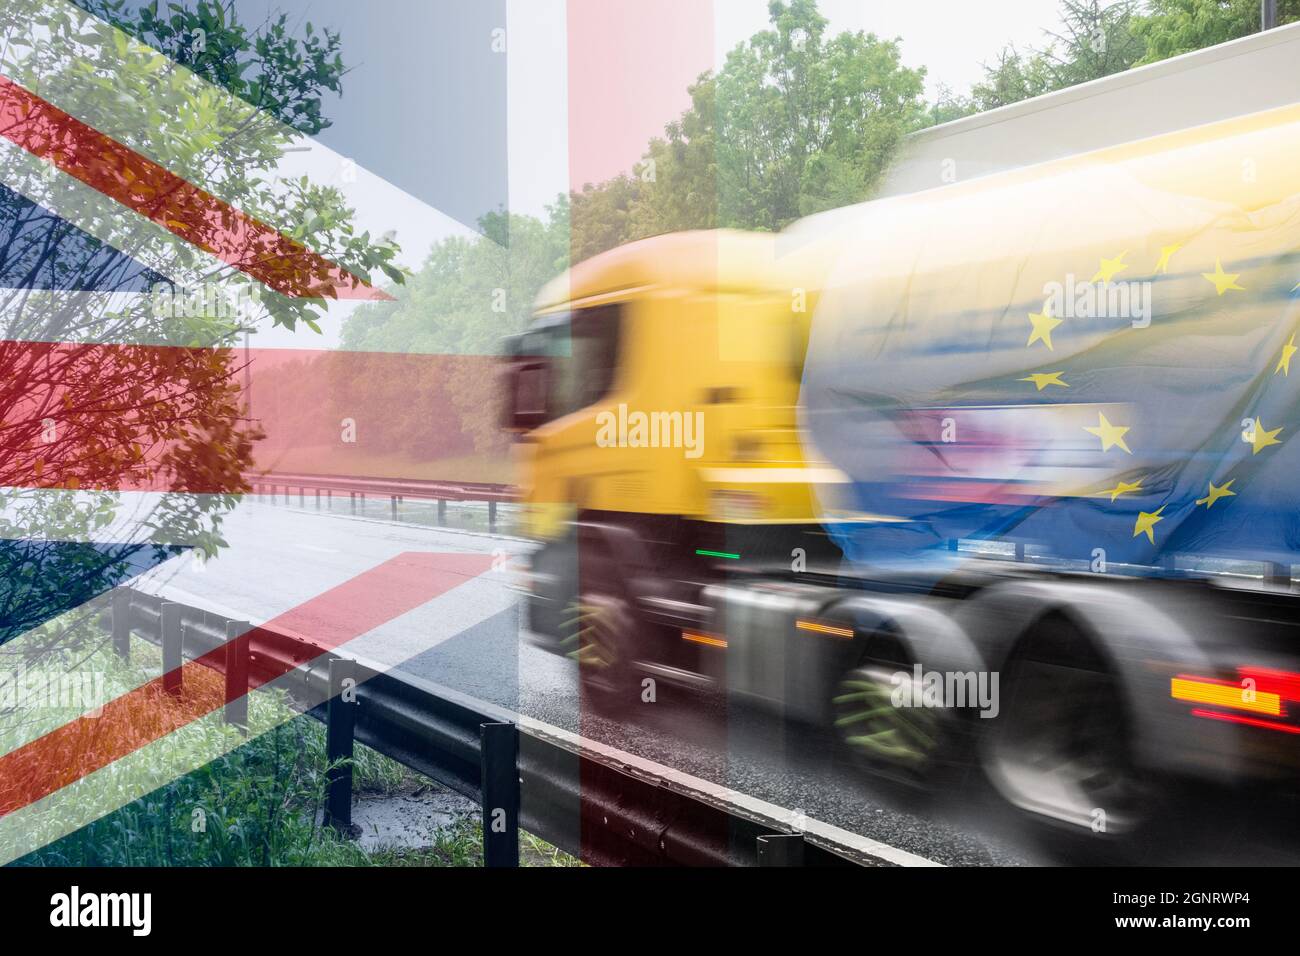 Tanker mit EU-Flagge und UK-Flagge überlagert. Steigende Benzinpreise, LKW-Fahrer-Knappheit, Tankrumpanikkauf, Brexit-Knappheit... Konzept Stockfoto